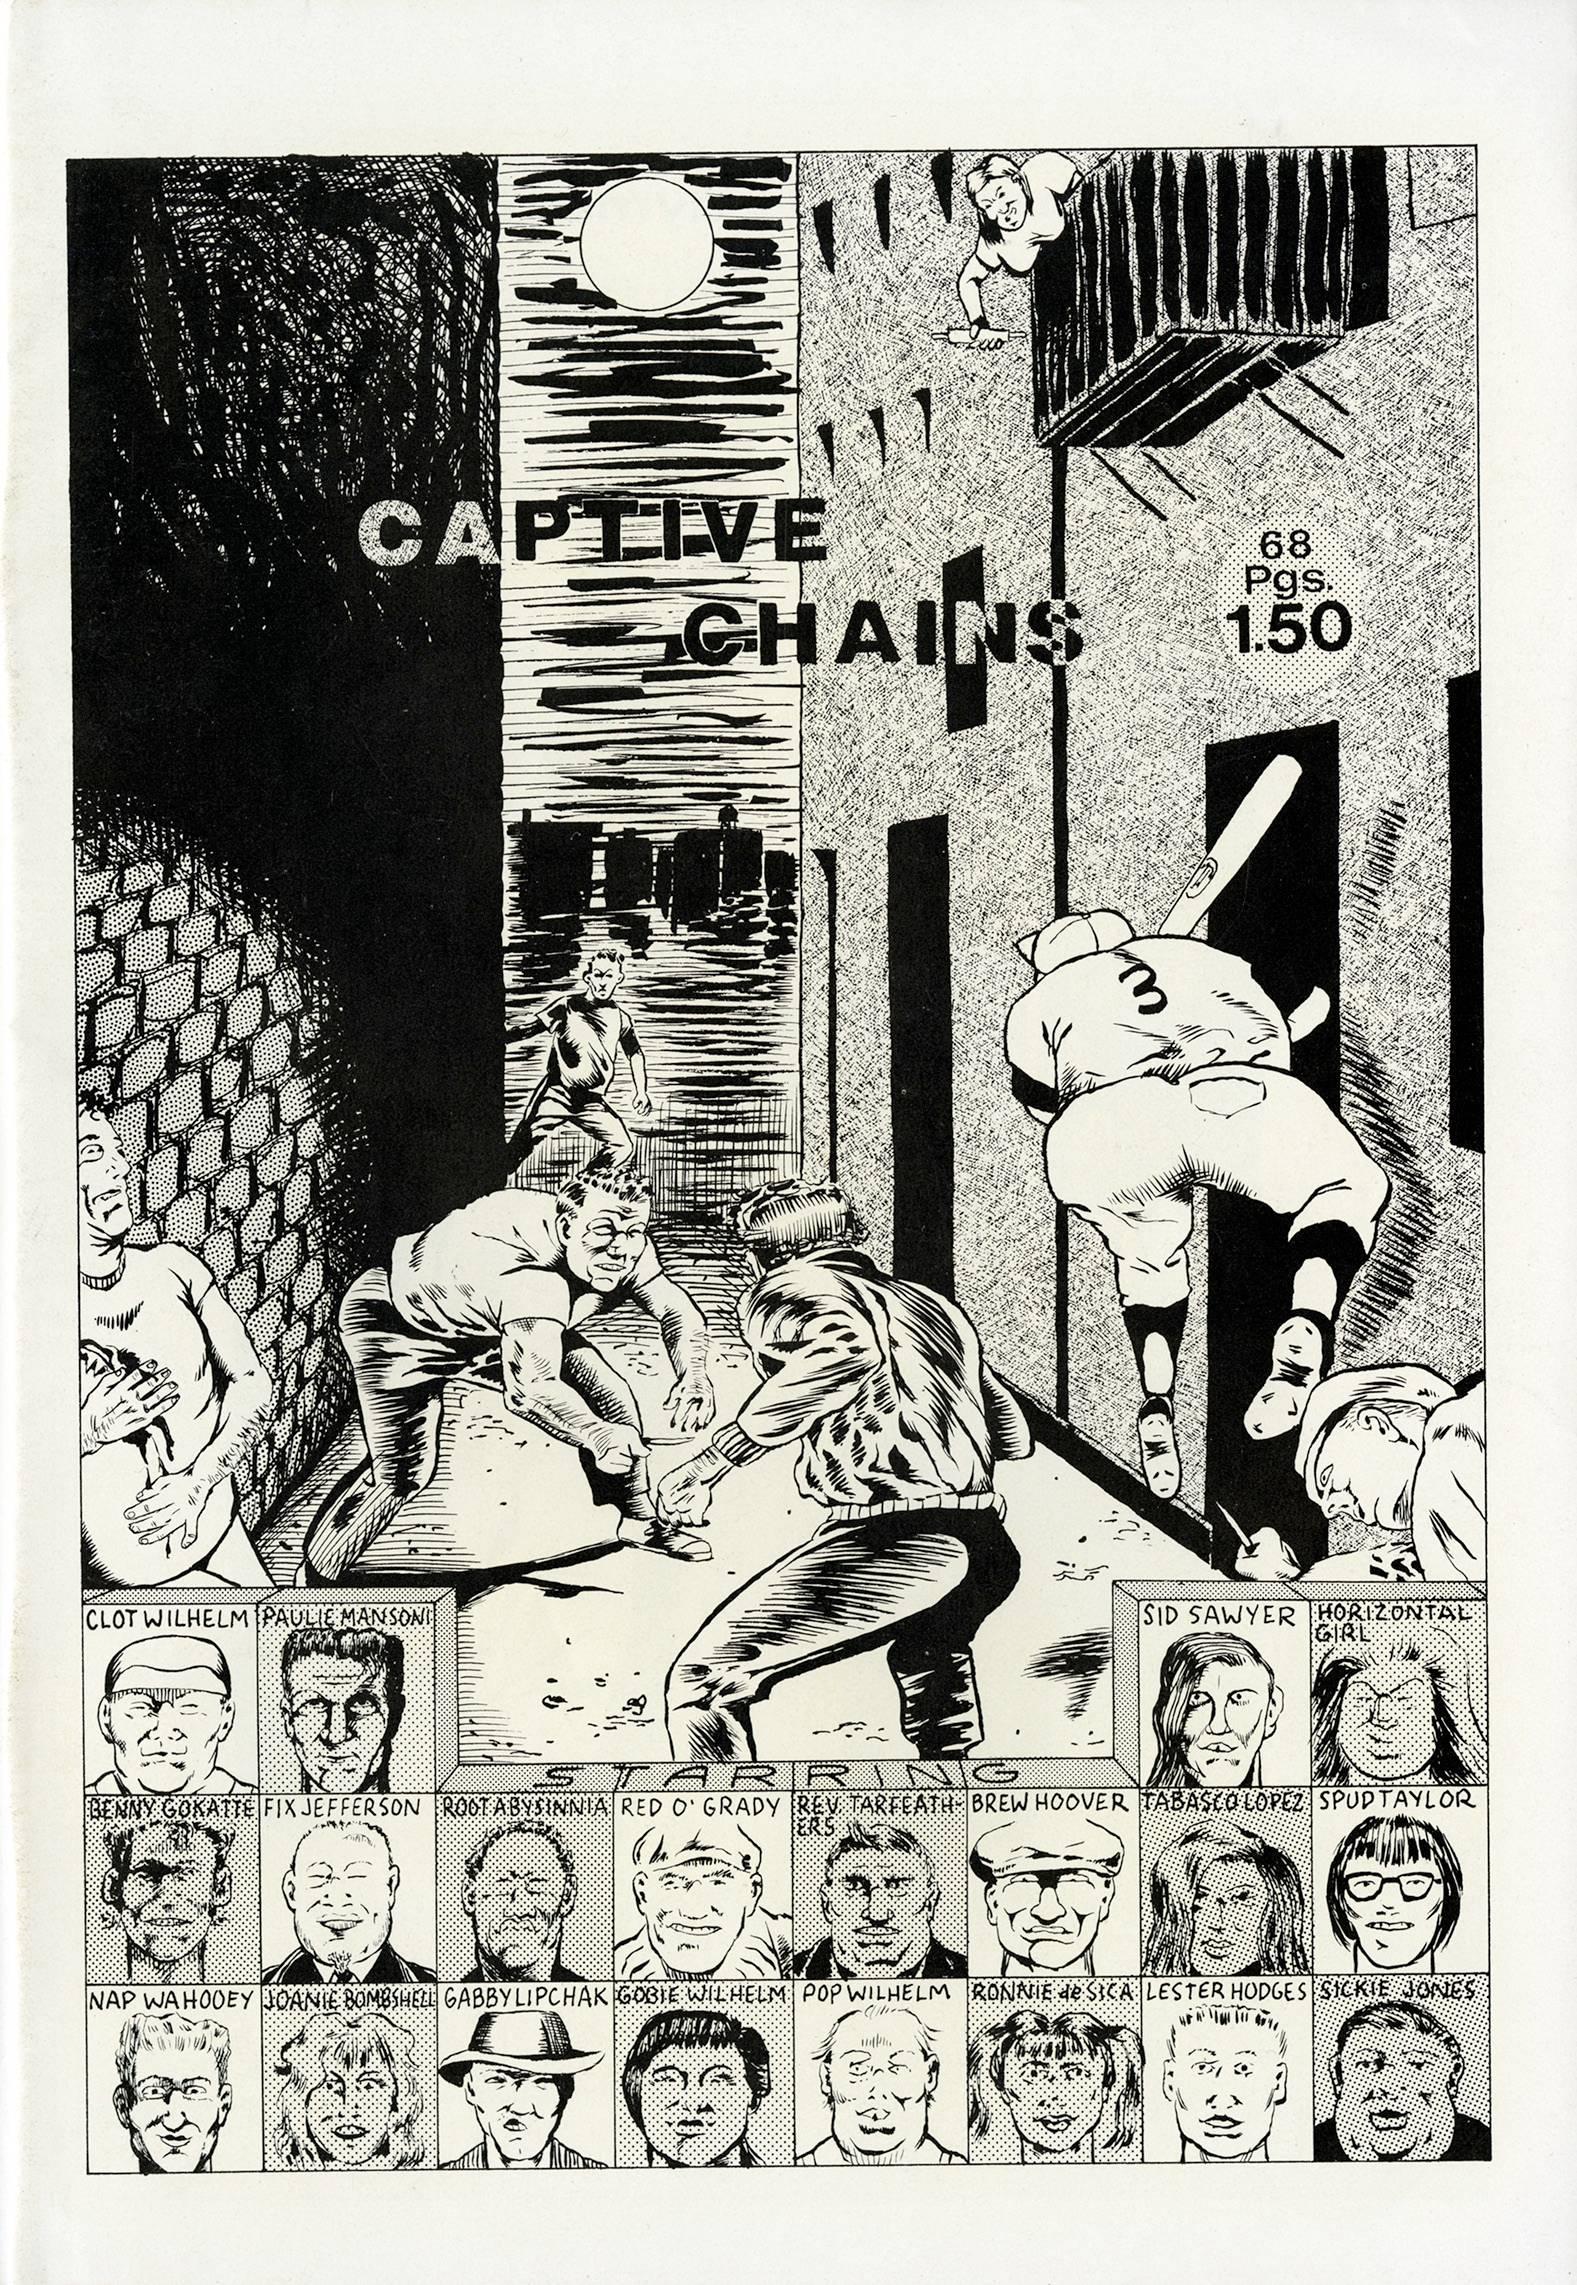 Raymond Pettibon Captive Chains, 1978:
Pettibons gut dokumentiertes erstes Künstlerbuch, das kürzlich vollständig im New Museum in New York ausgestellt wurde, gilt weithin als wegweisend für die Entwicklung des Stils und der Themen des Künstlers. 